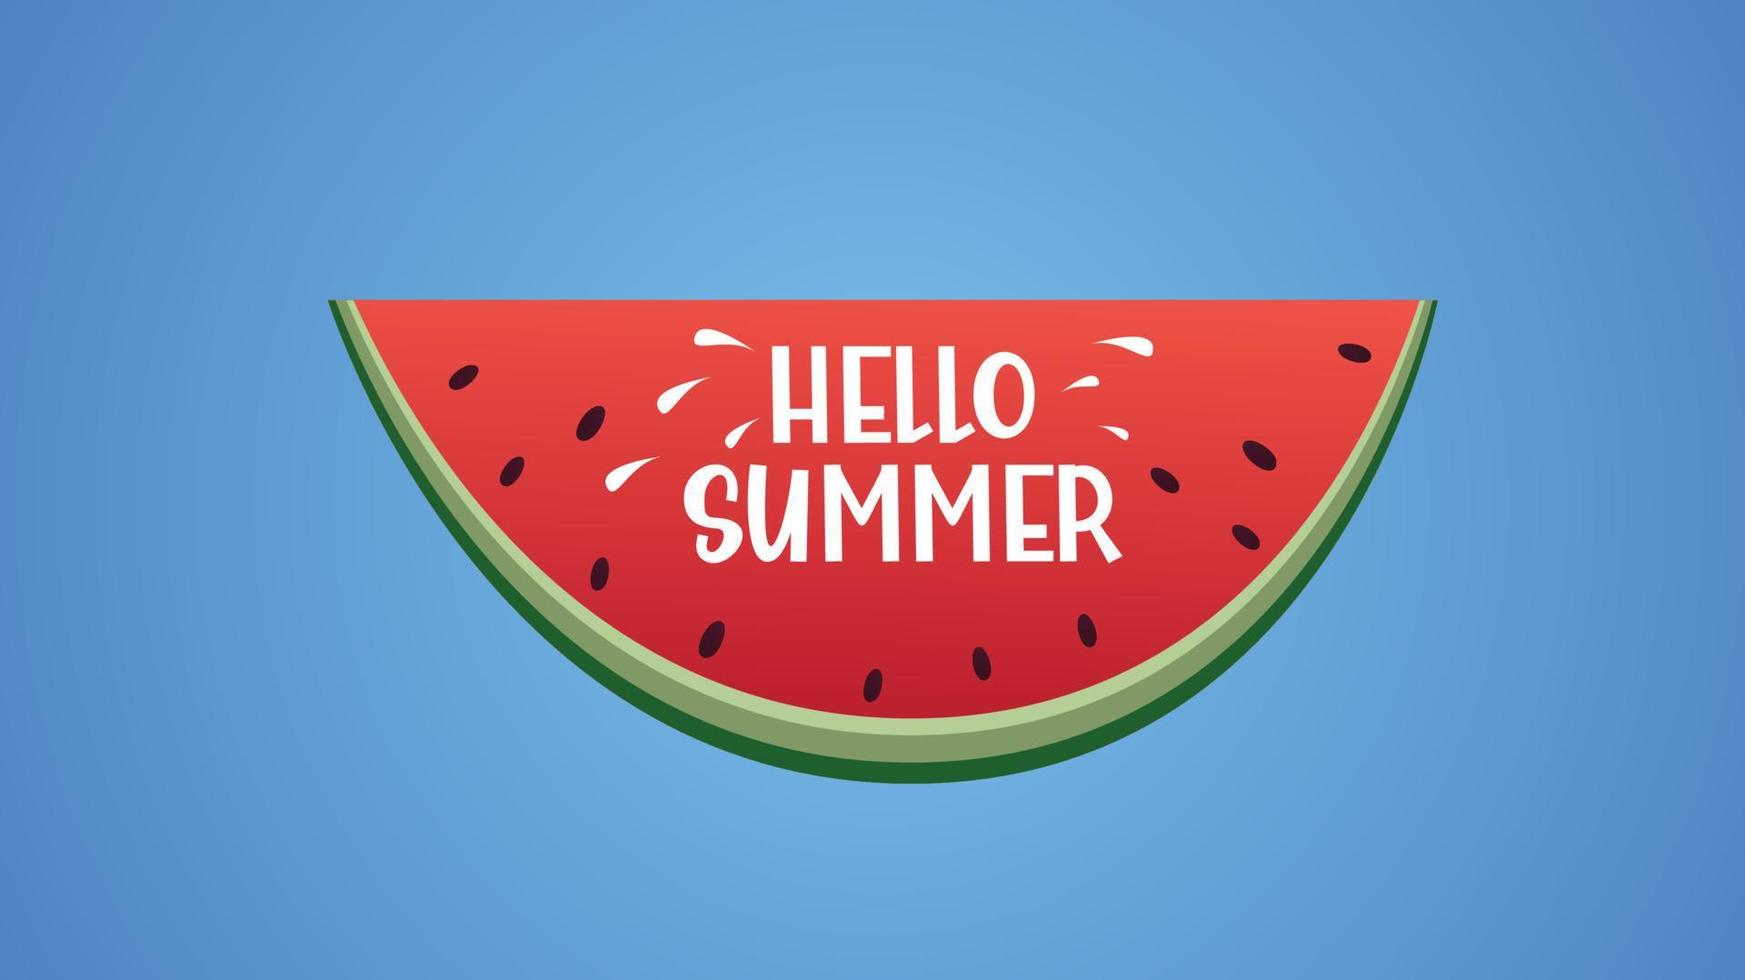 hej sommartext på vattenmelonskiva, gratulationskort med sommar, vektorillustration vektor